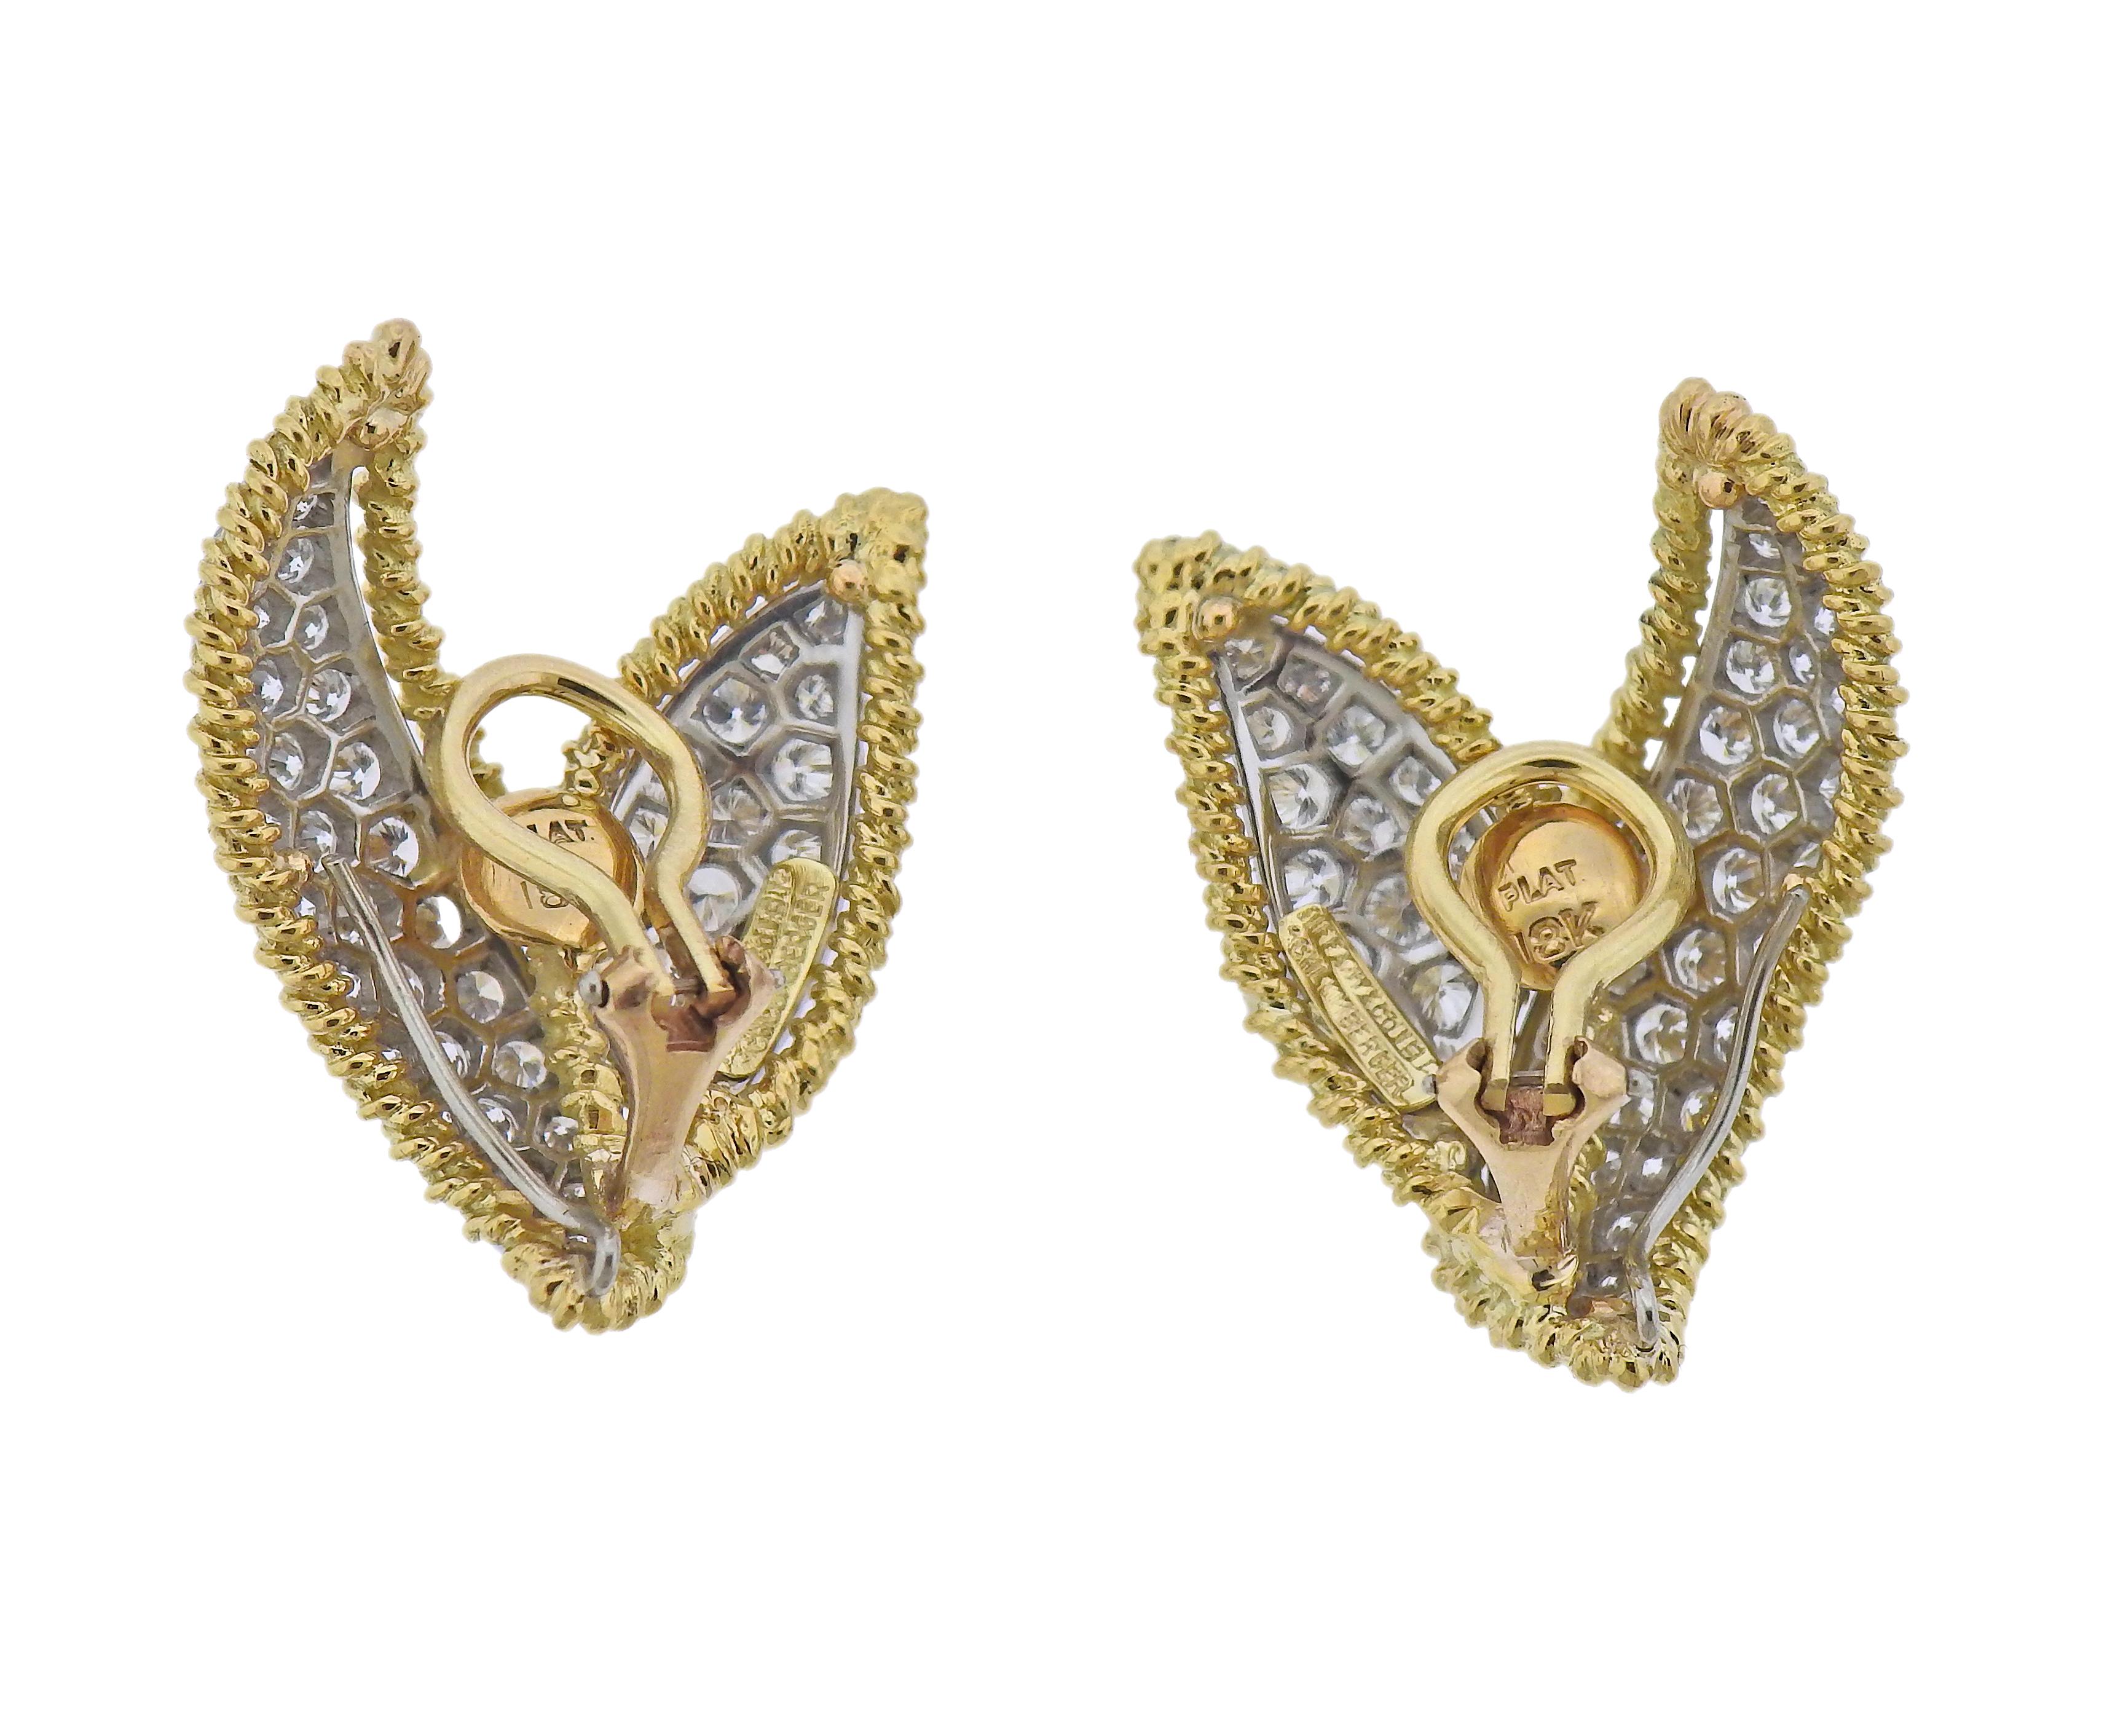 Ein Paar Ohrringe aus 18 Karat Gold und Platin von Jean Schlumberger für Tiffany & Co, besetzt mit ca. 3,60 ct Diamanten. Die Ohrringe sind 29 mm x 25 mm groß. Gezeichnet: Tiffany & Co, Schlumberger, Plat 18k. Gewicht - 16,8 Gramm.